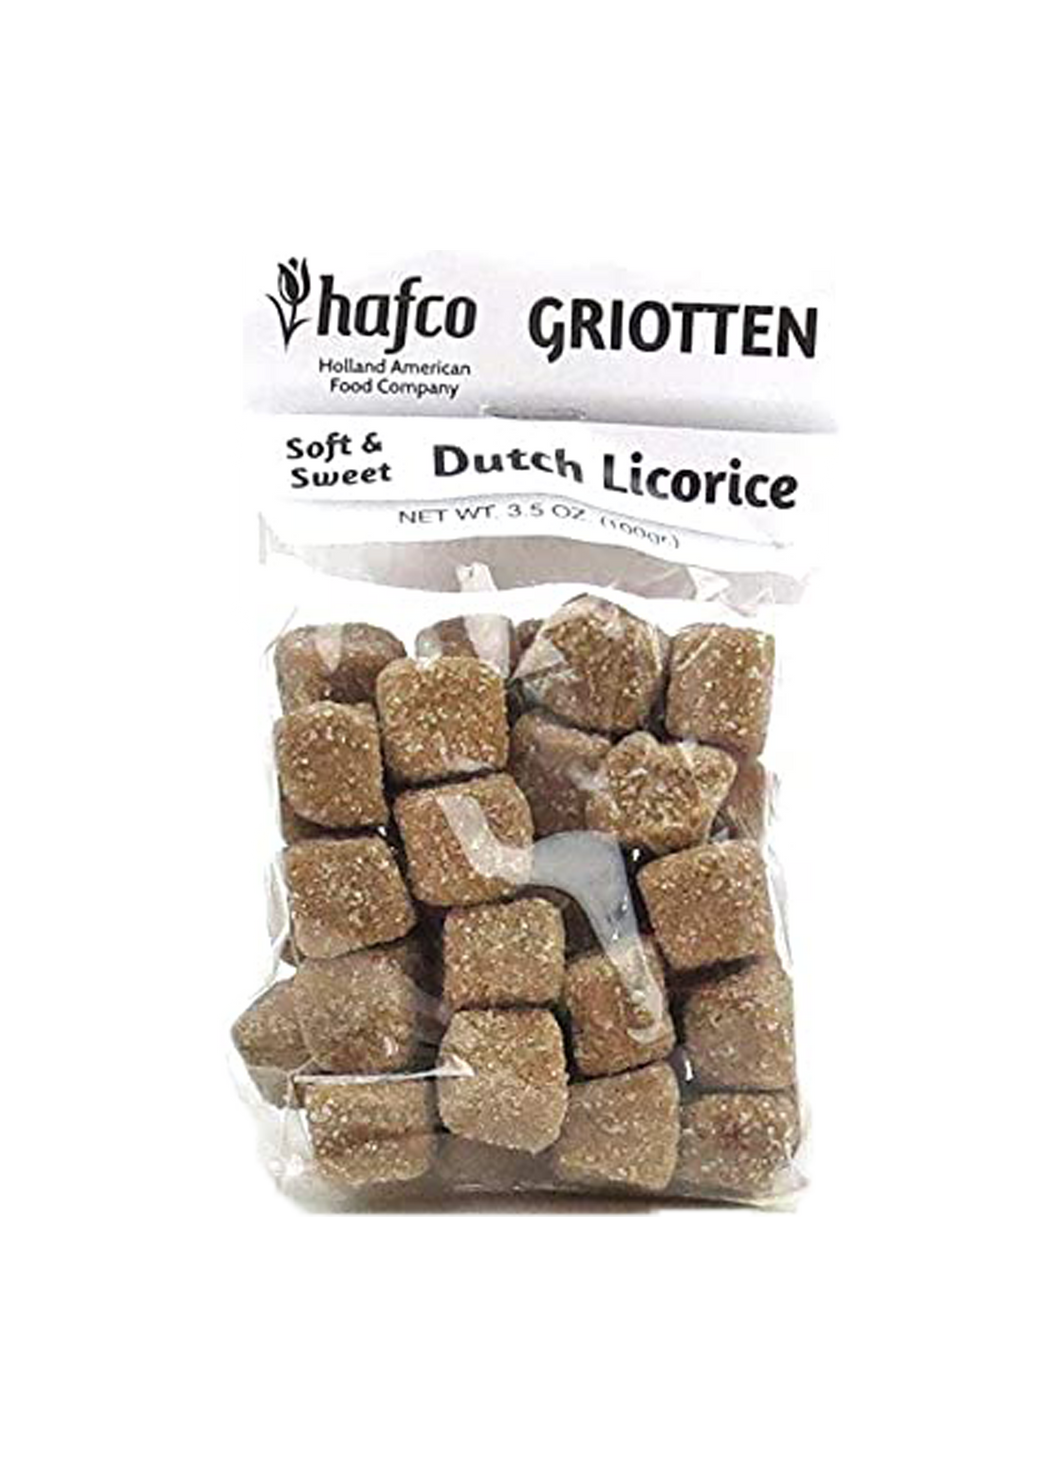 Hafco Griotten Dutch Licorice Soft & Sweet